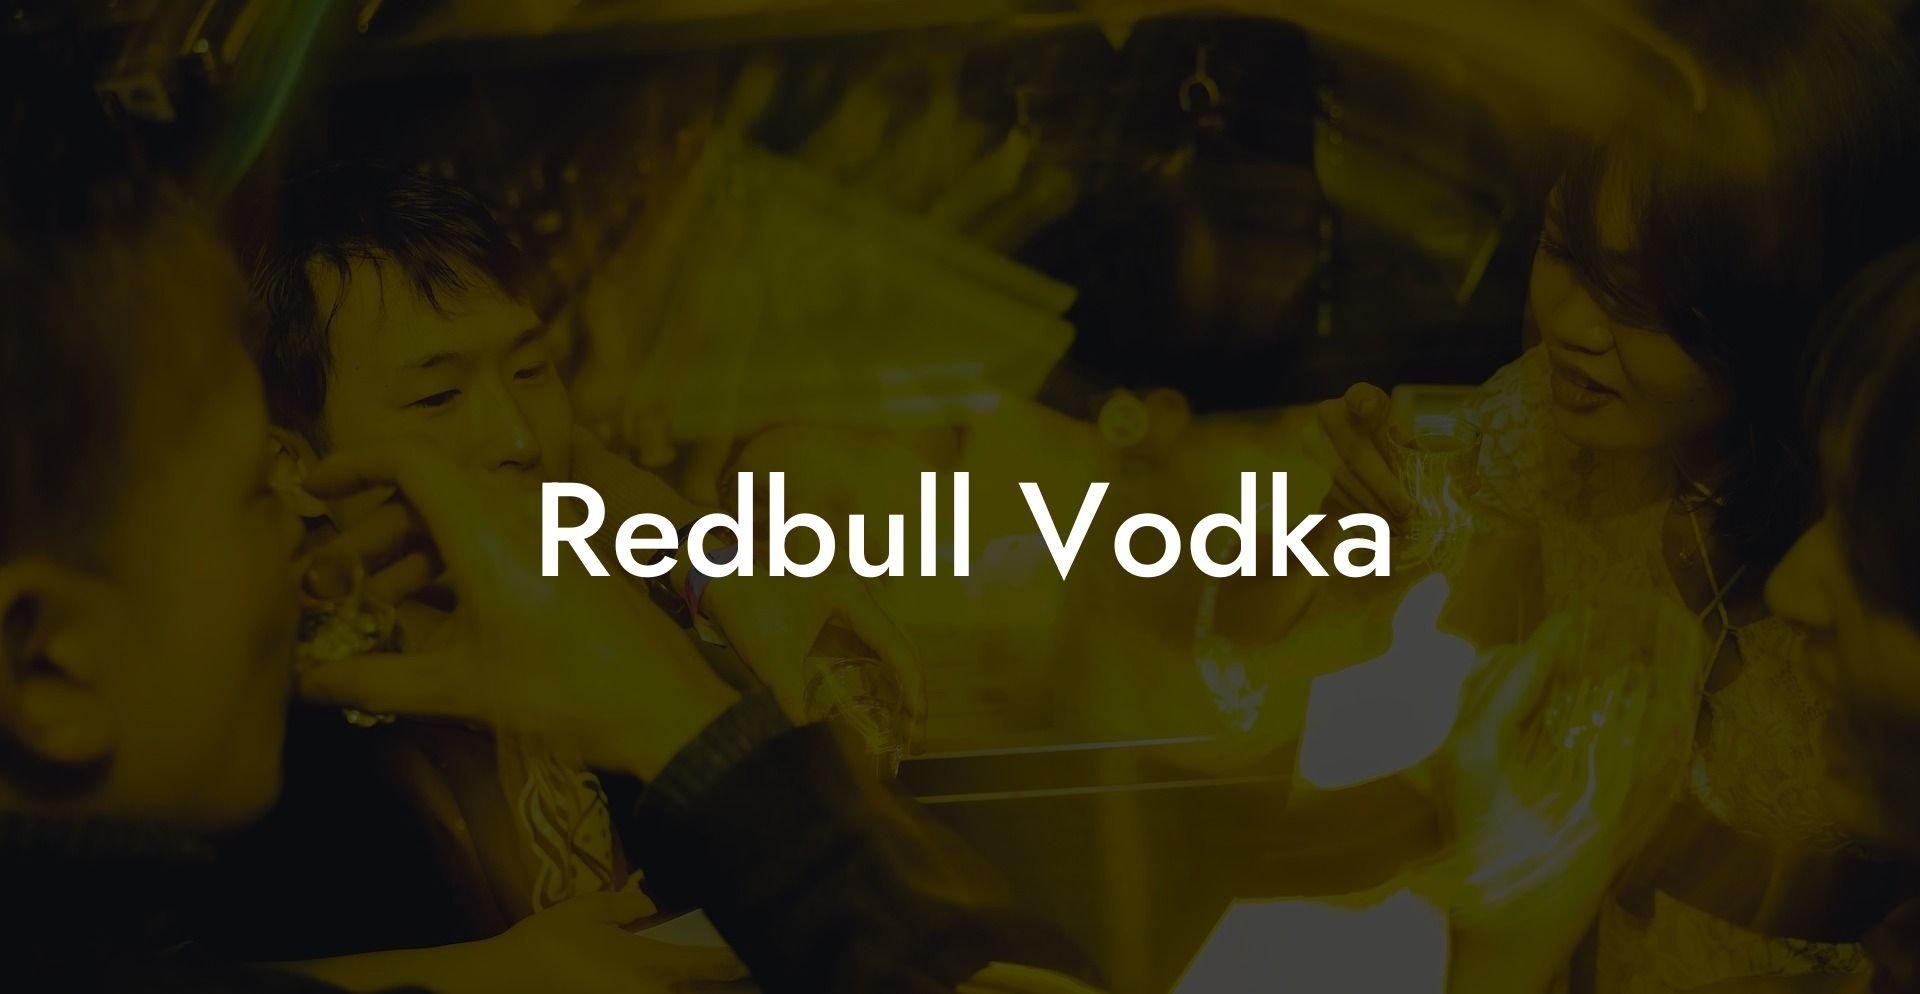 Redbull Vodka